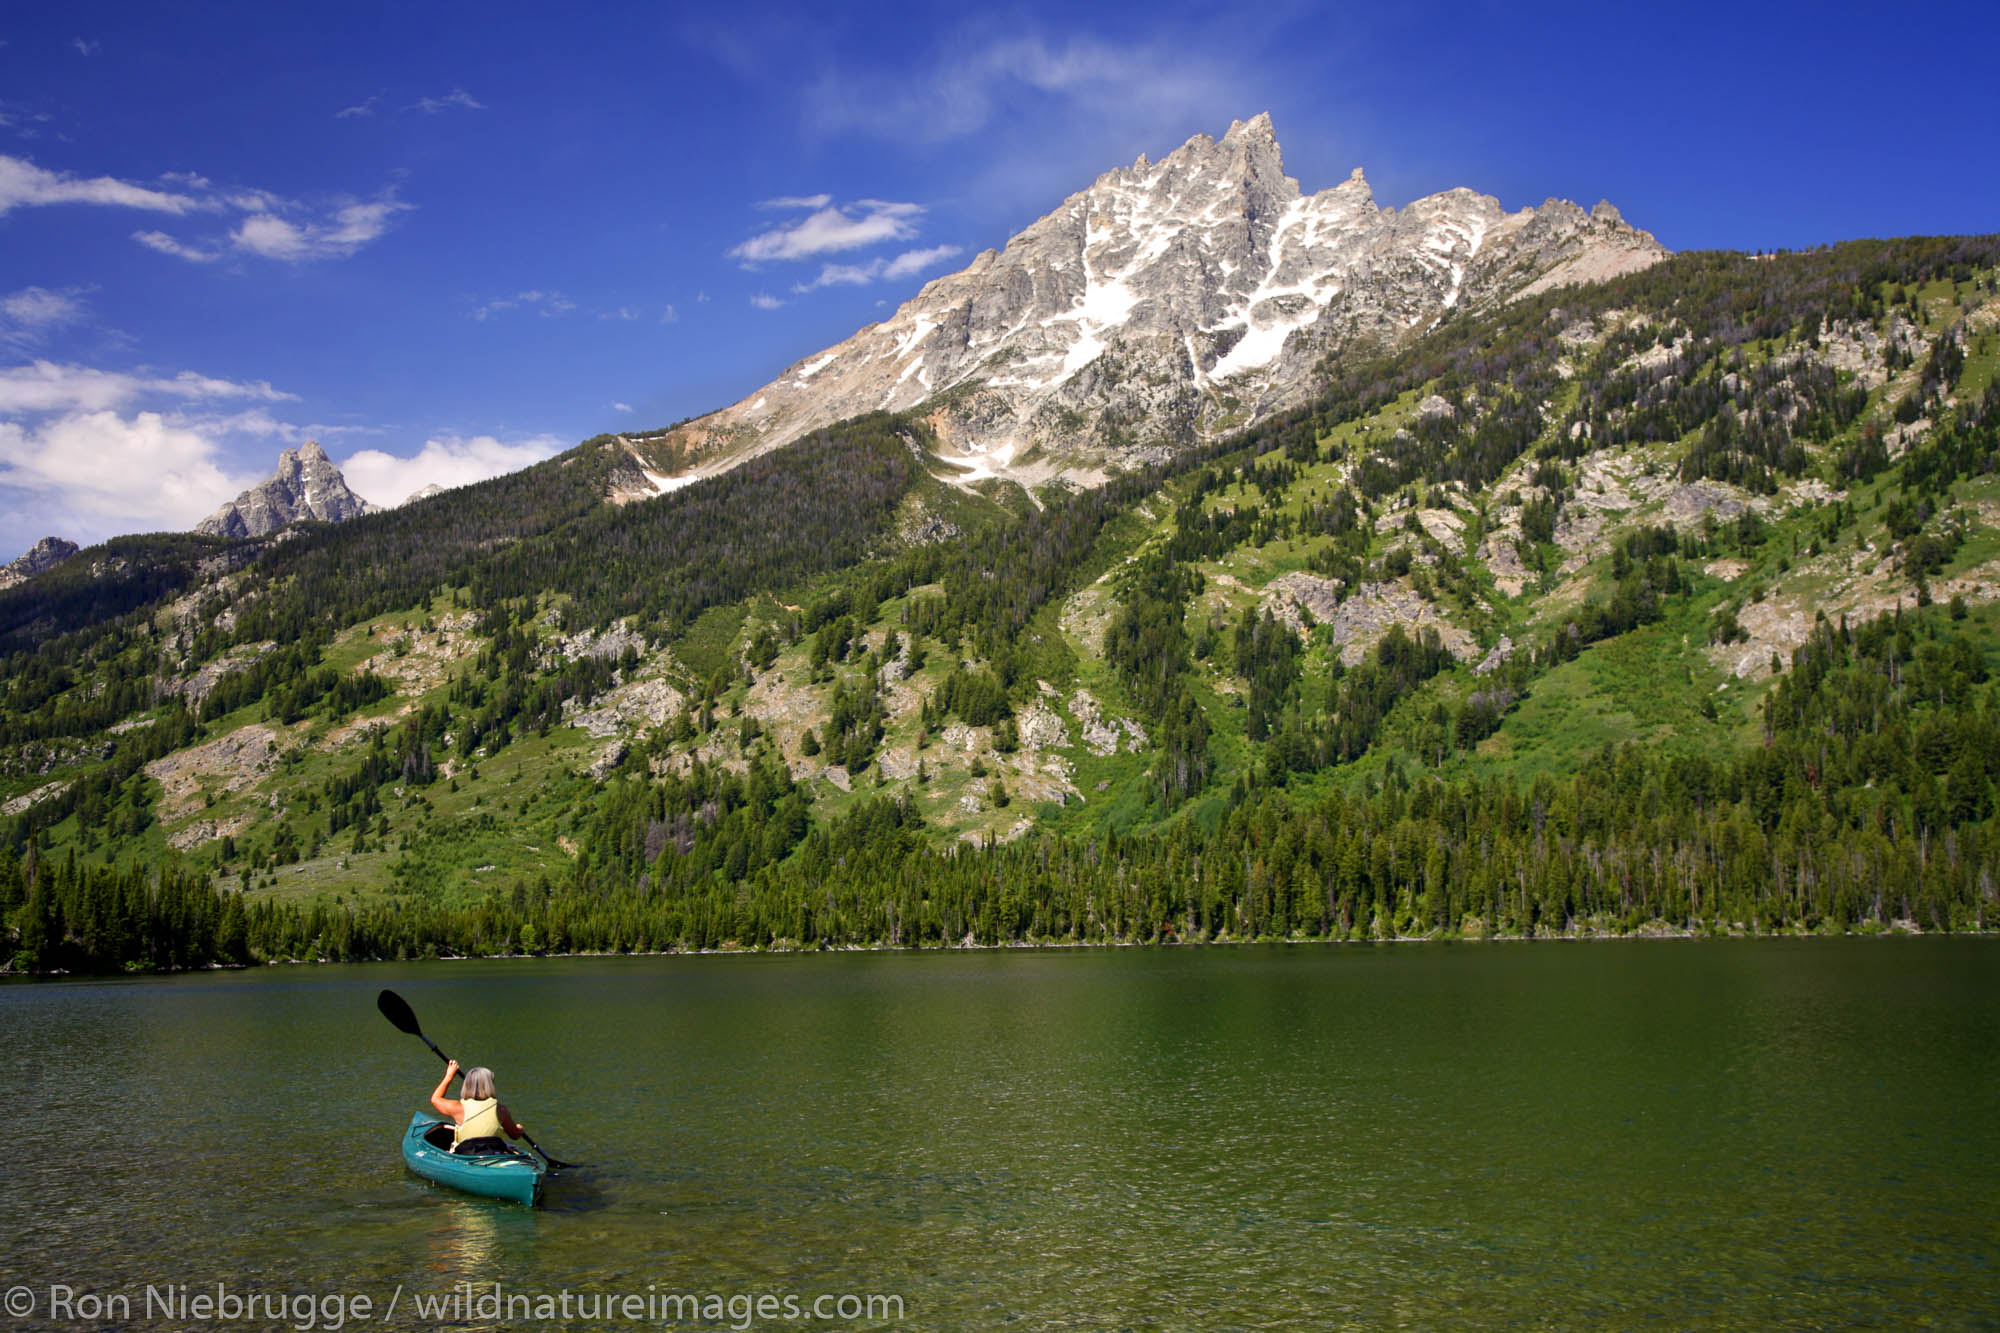 Kayaking on Jenny Lake, Grand Teton National Park, Wyoming. (MR)